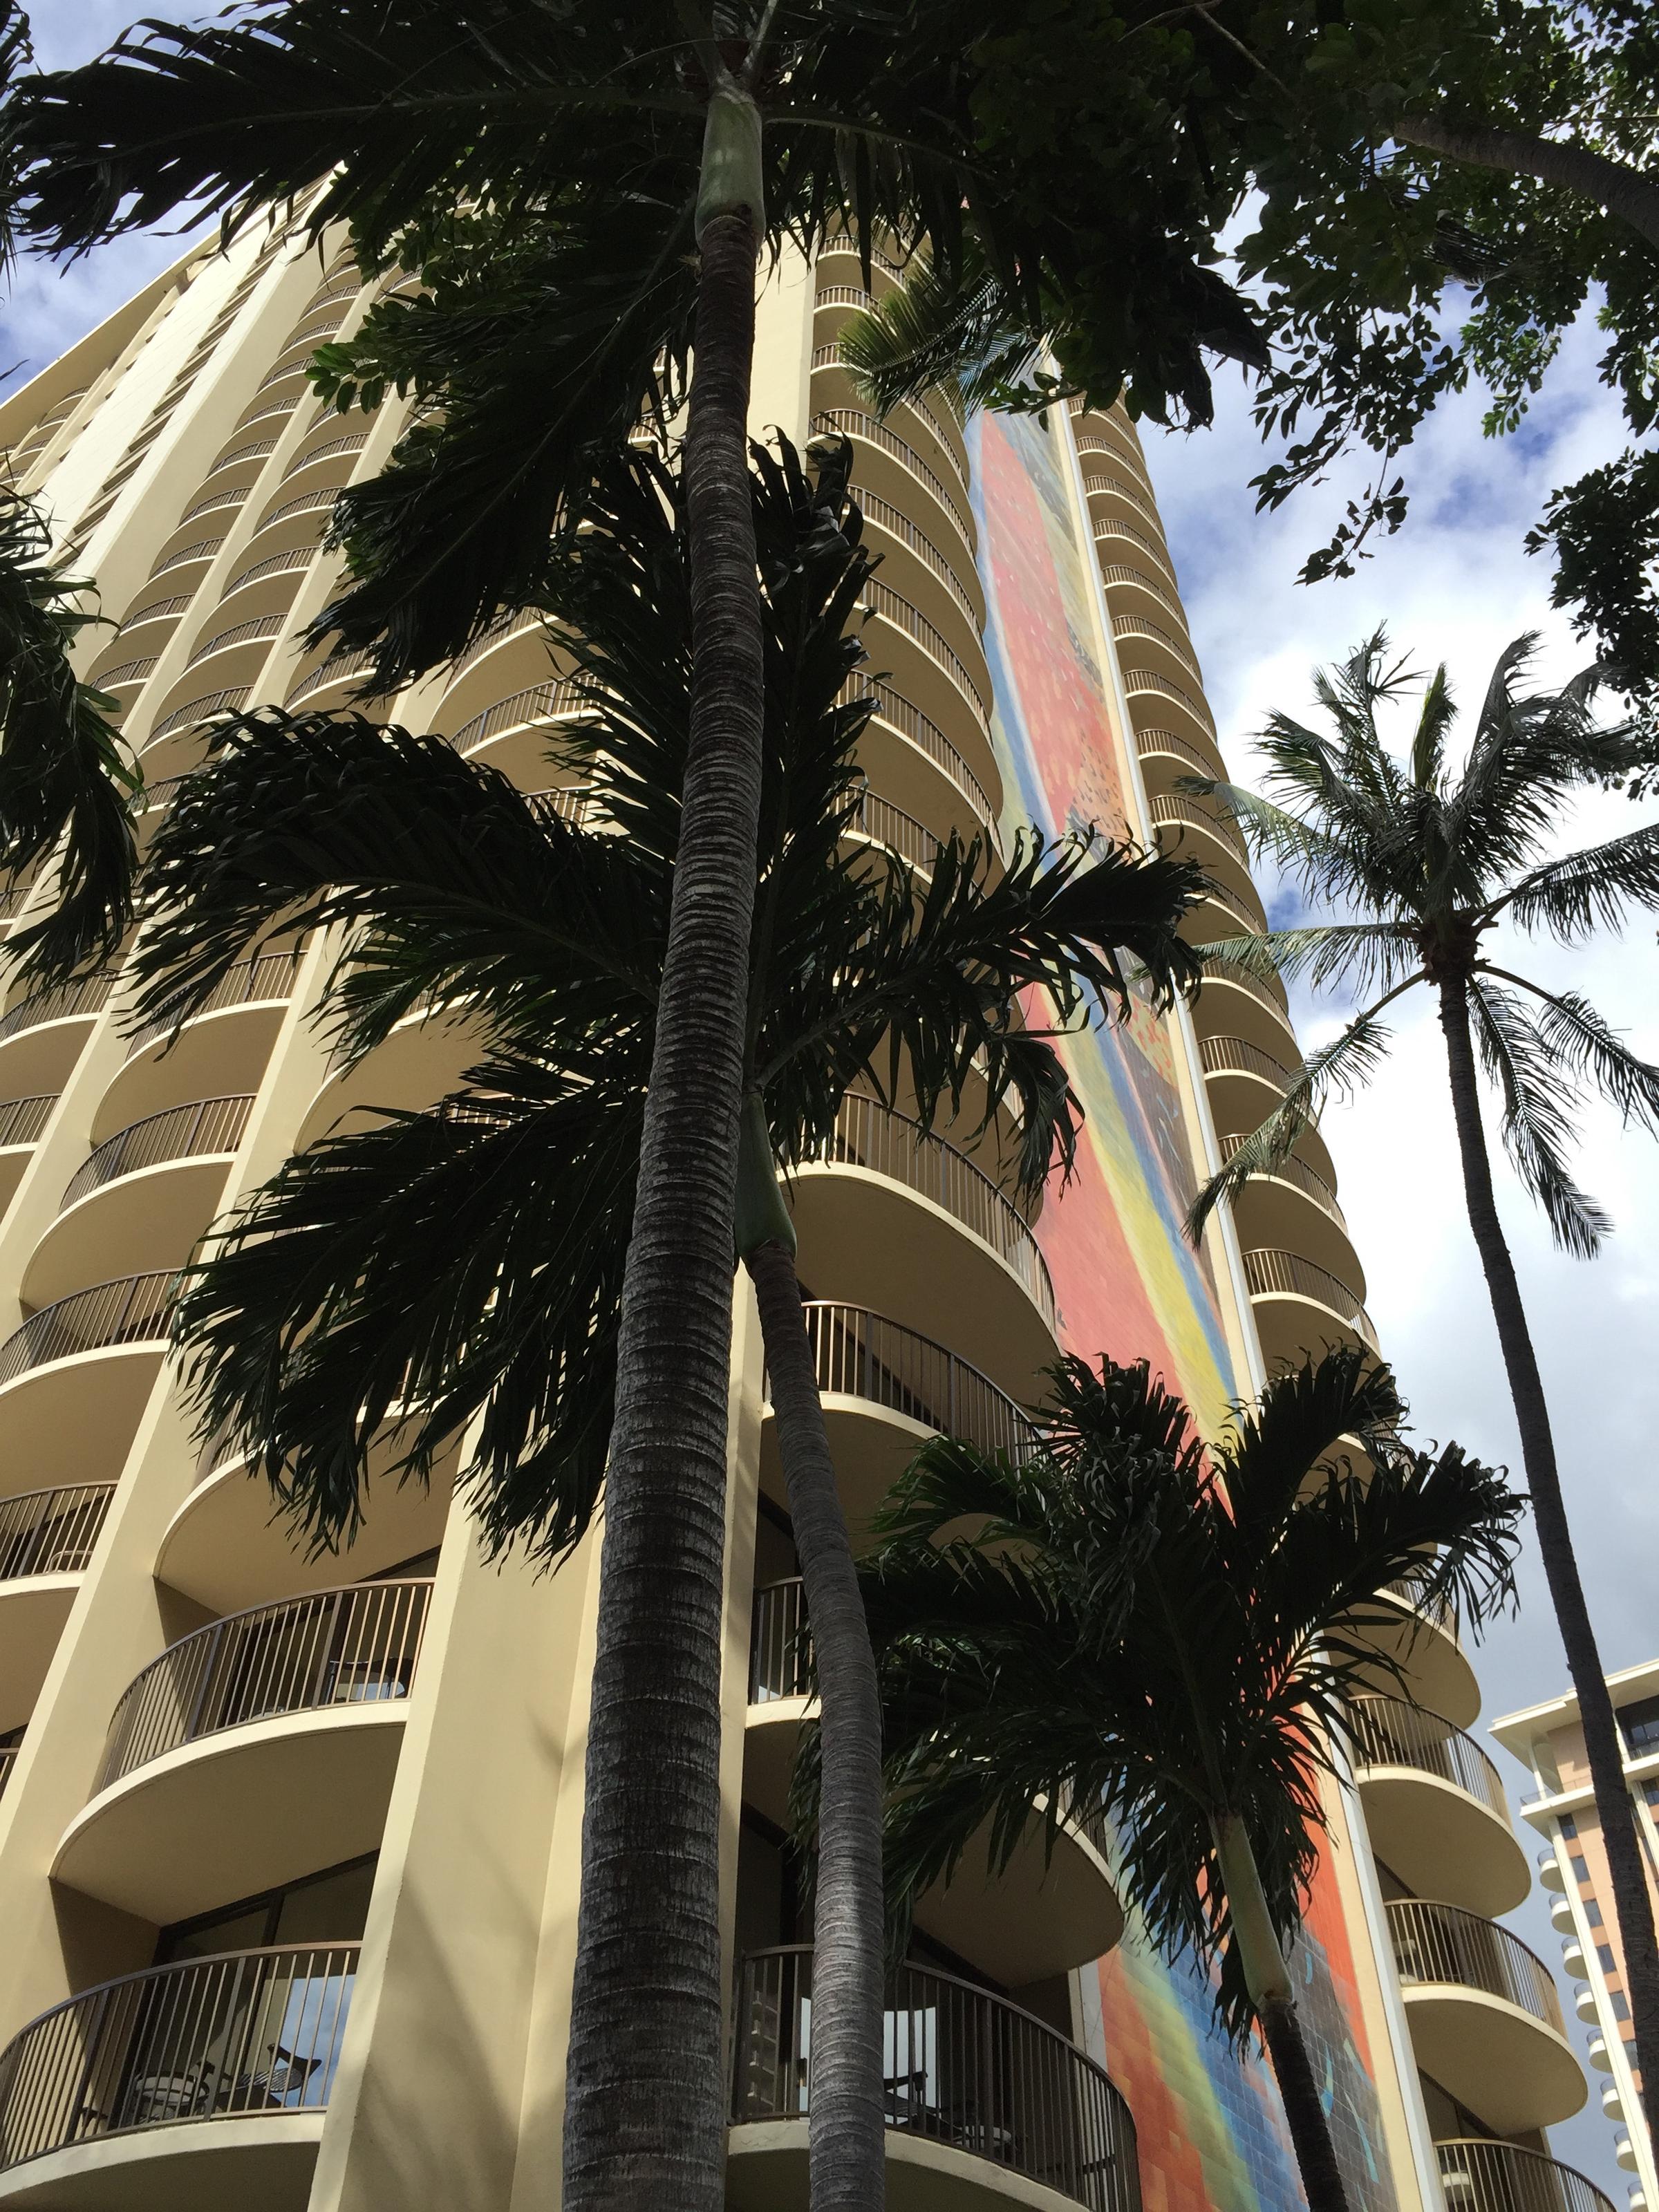 The Hilton Hawaiian Village--a Waikiki icon since 1955 | KCBX